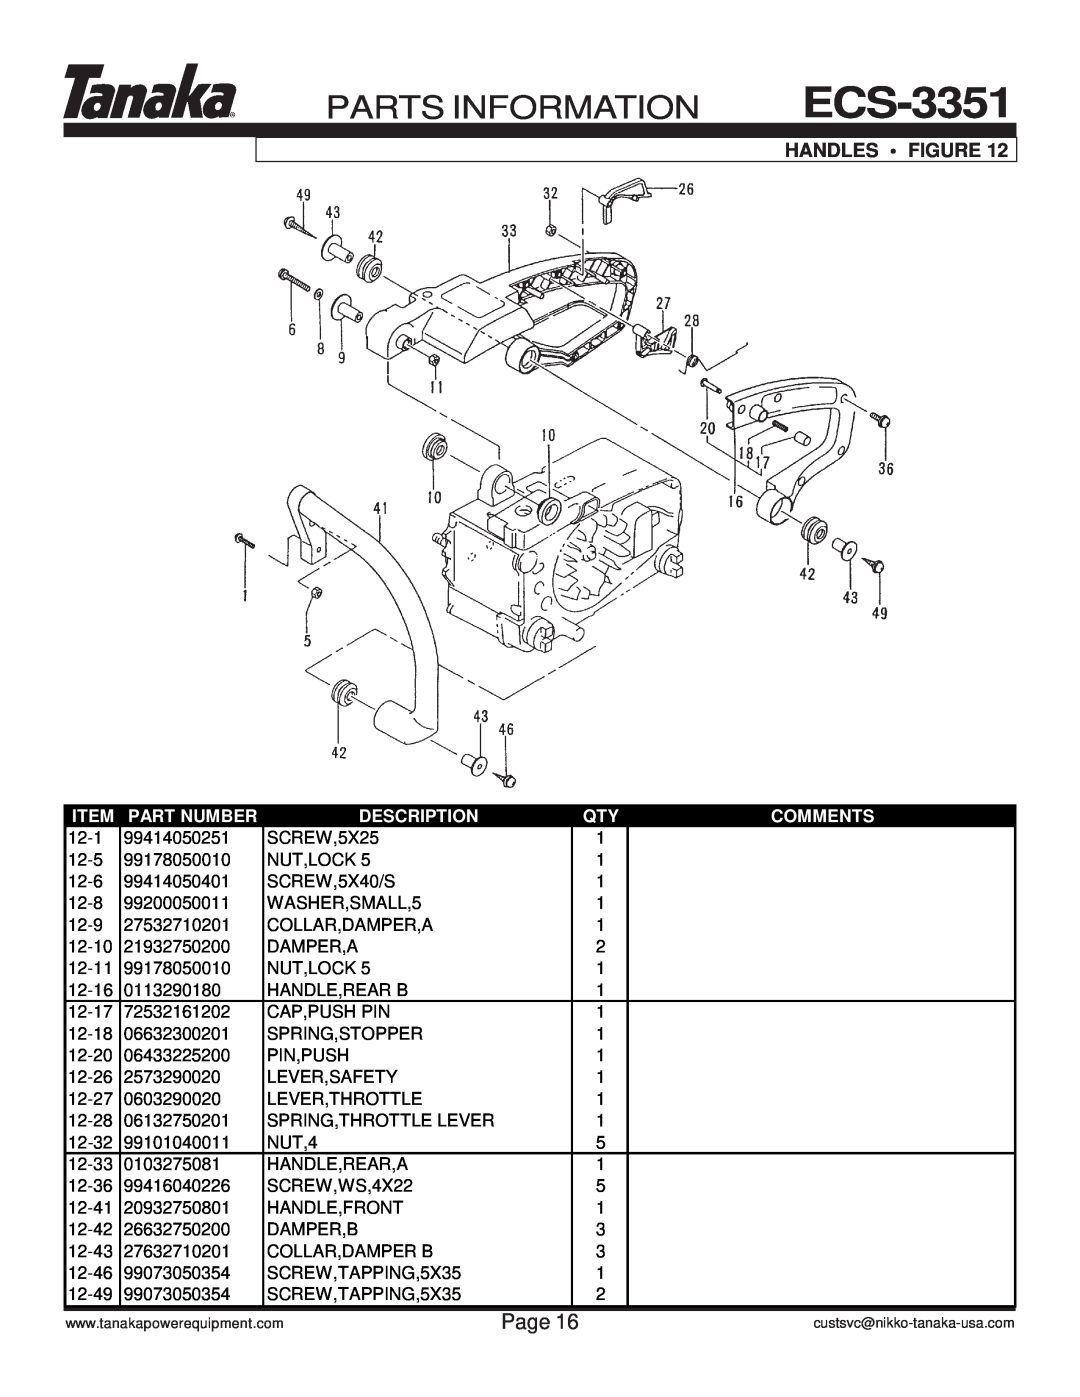 Tanaka ECS-3351/B manual Handles Figure, Parts Information, Page, Part Number, Description, Comments 